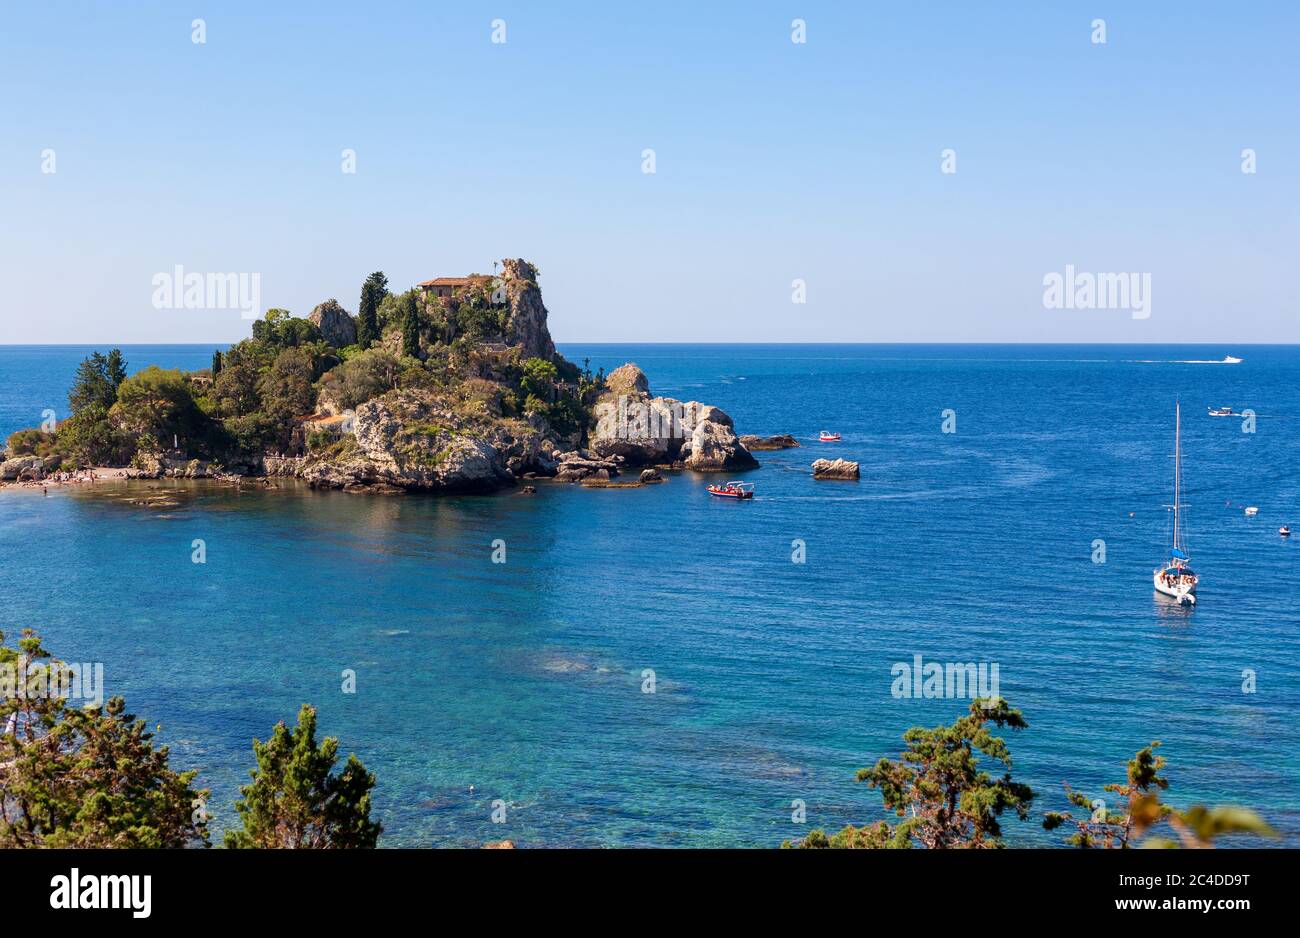 The Isola Bella island in Taormina, Italy Stock Photo